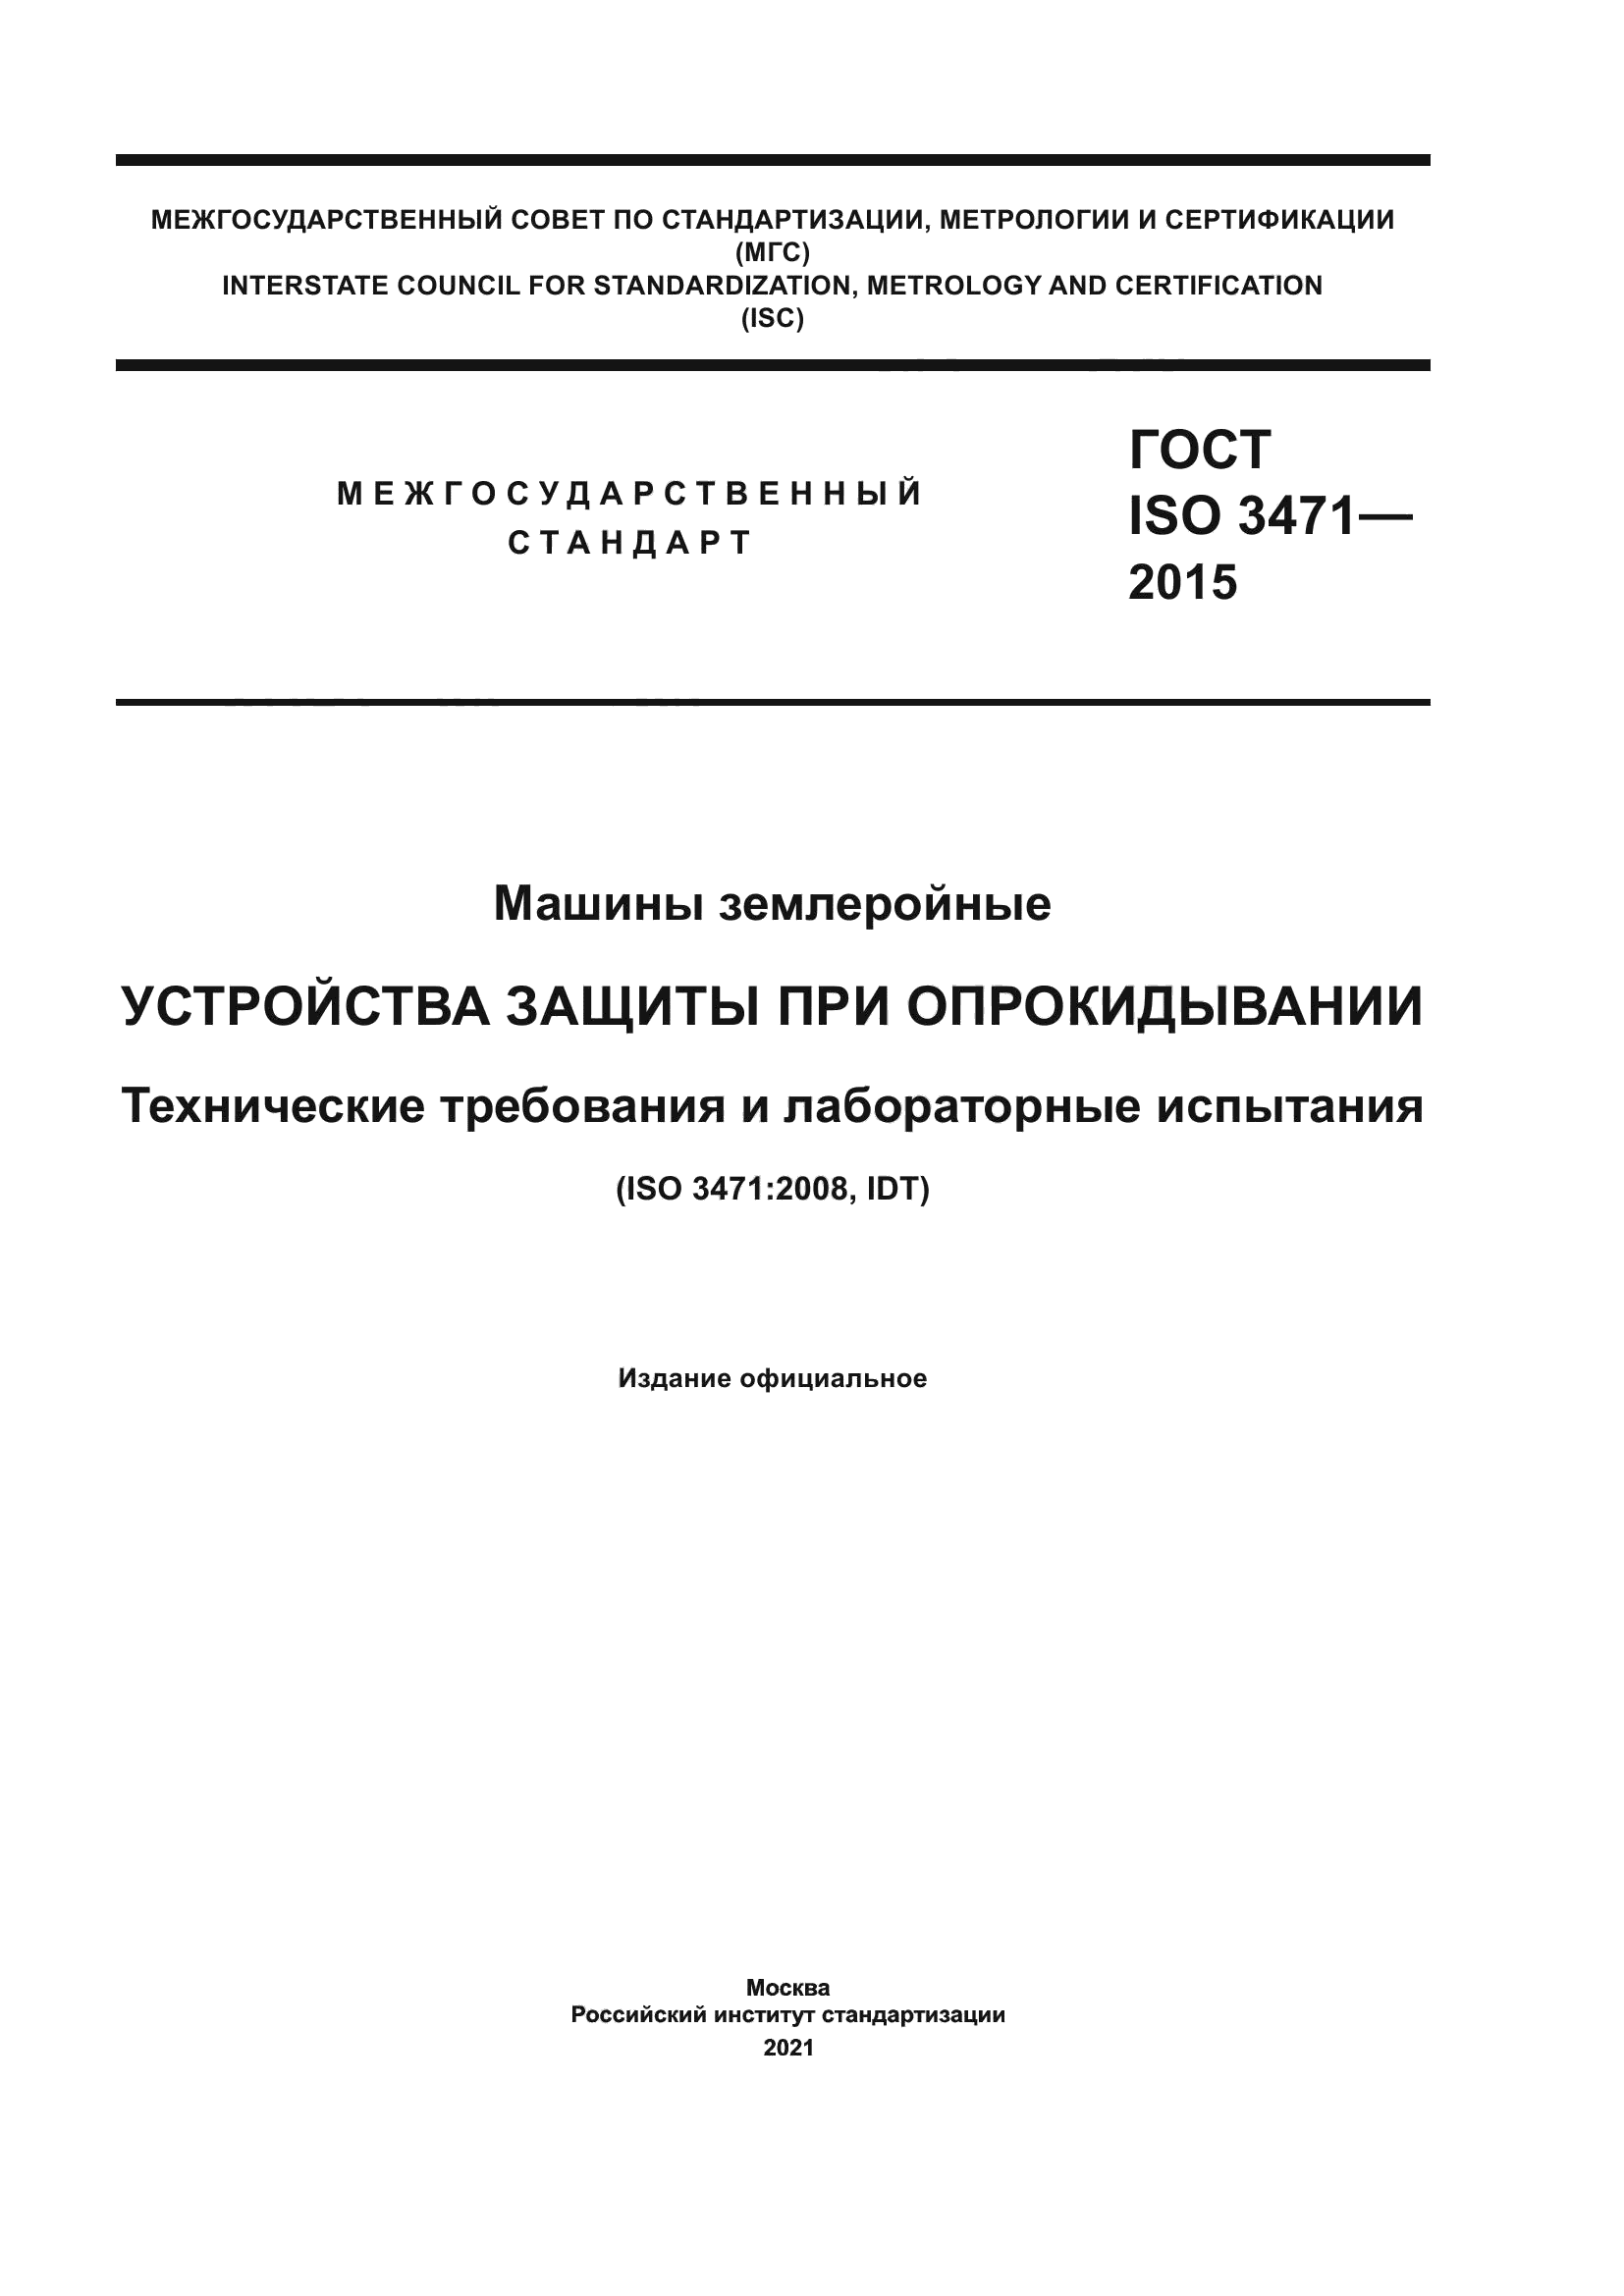 ГОСТ ISO 3471-2015